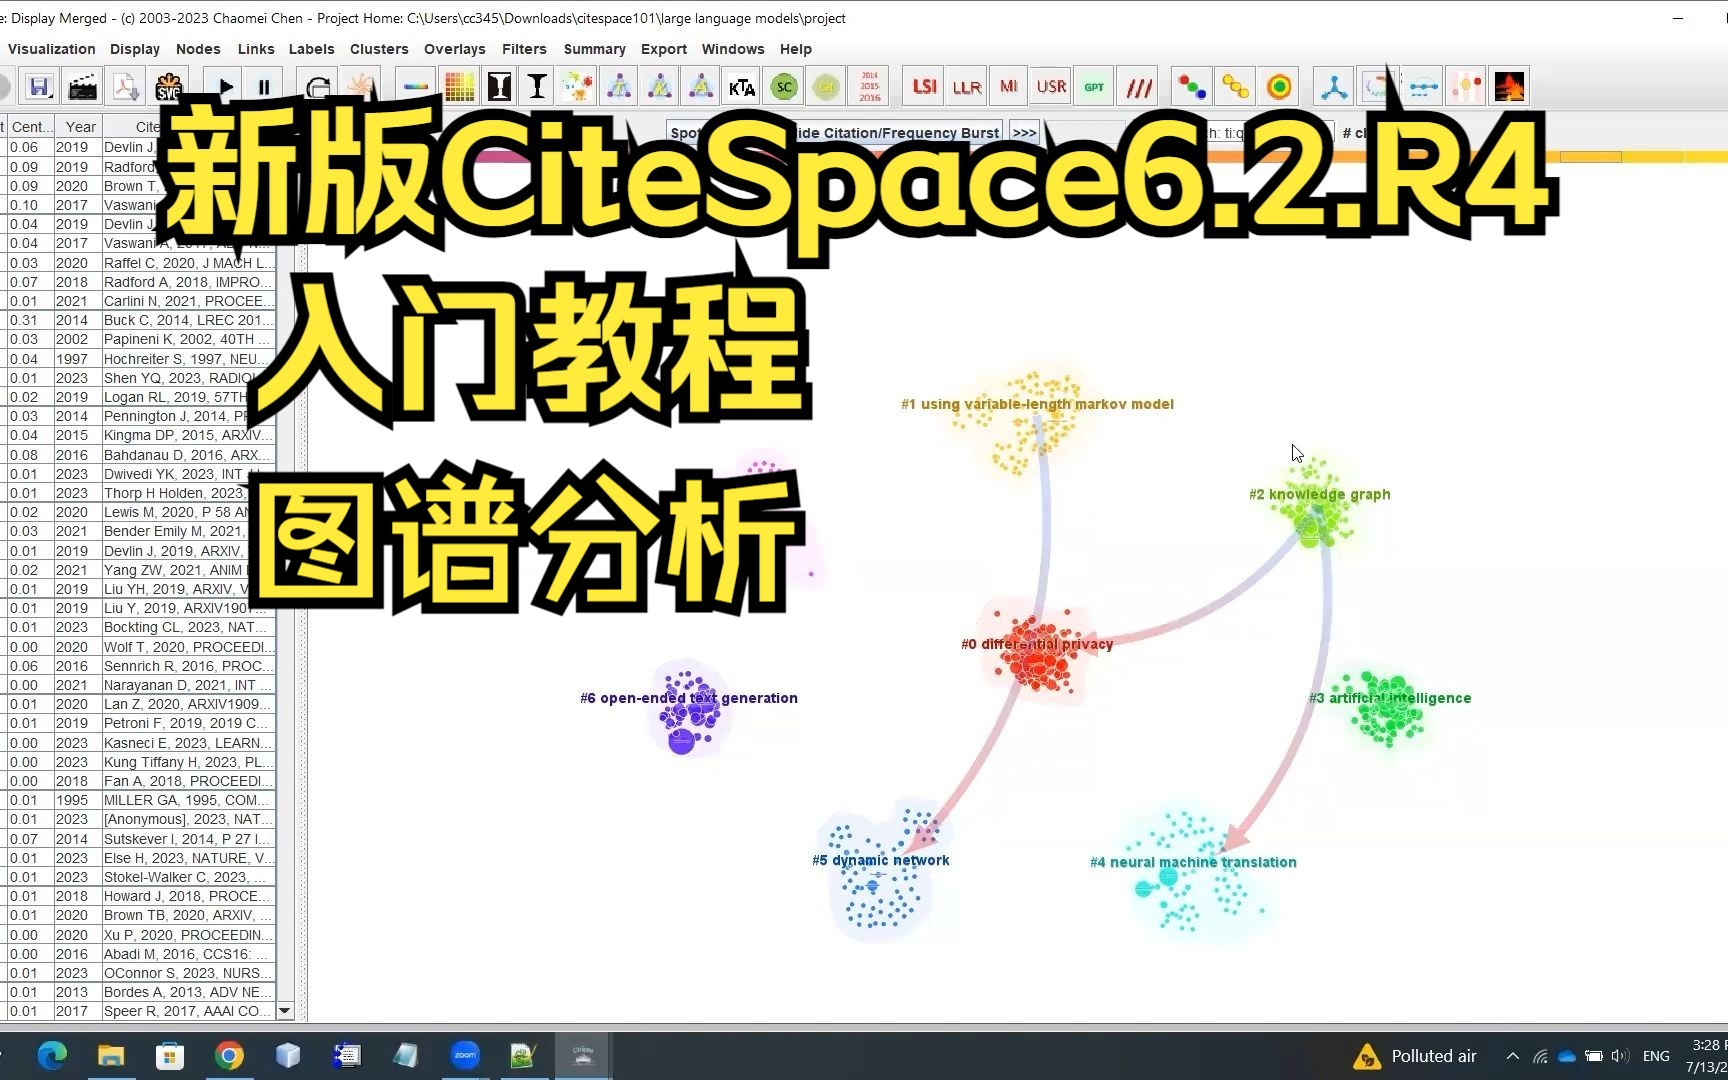 CiteSpace6.2.R4高级版：简短演示帮助您快速入门，陈超美教授关于新版如何使用和分析图谱的学习视频教程